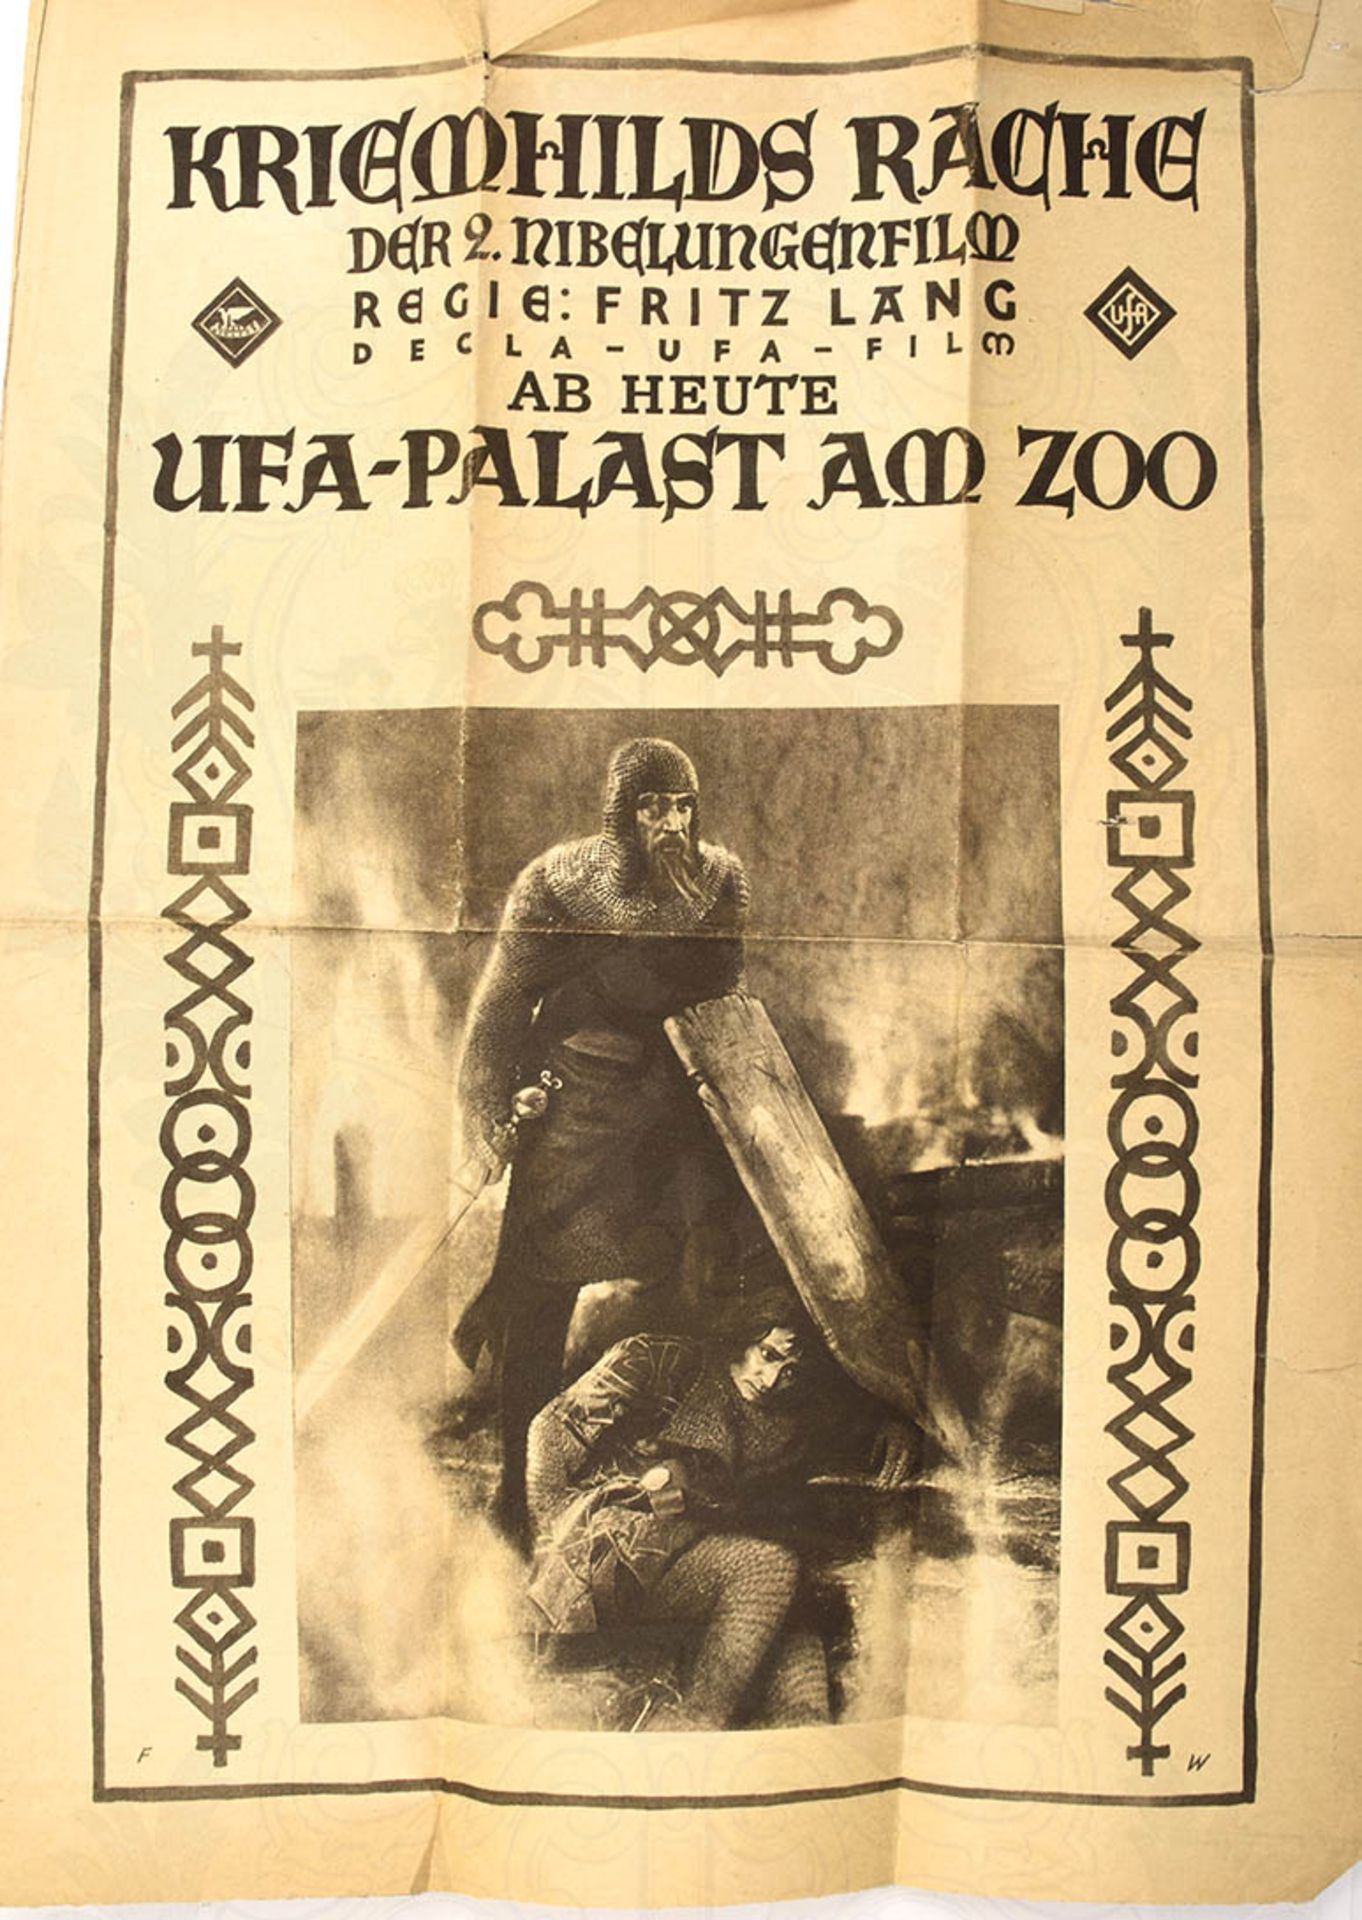 FILMPROGRAMM "KRIEMHILDS RACHE", 2. Nibelungen-Film, 1924, "Ab heute UFA-Palast am Zoo" (Bln.),